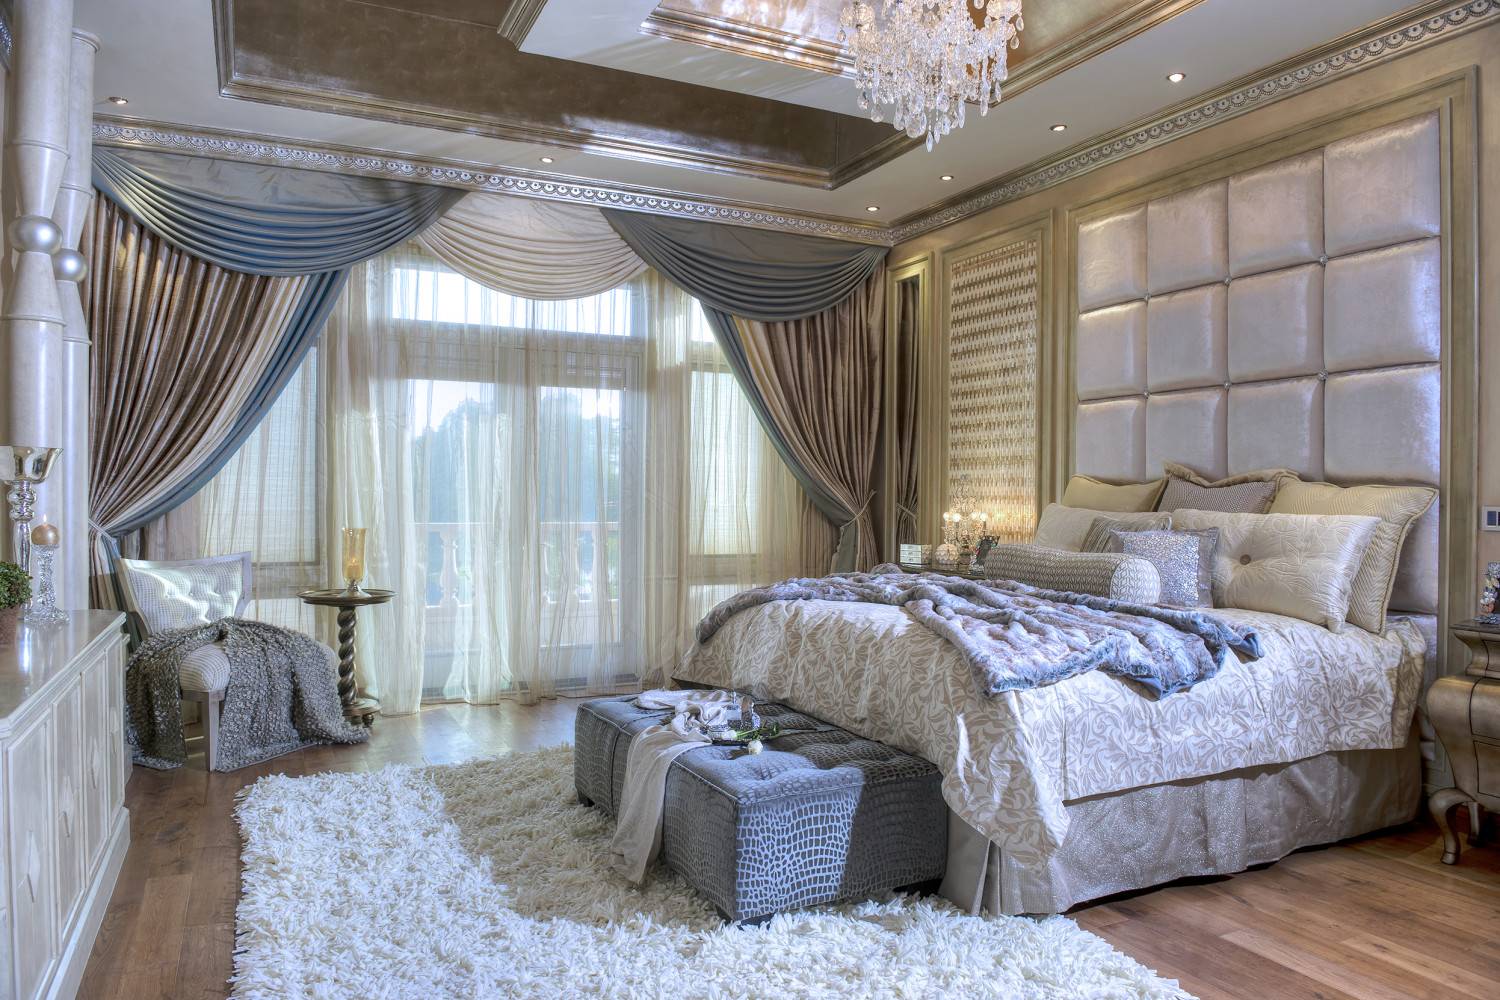 Спальня в восточном стиле: оформление интерьера в арабском и турецком стилях